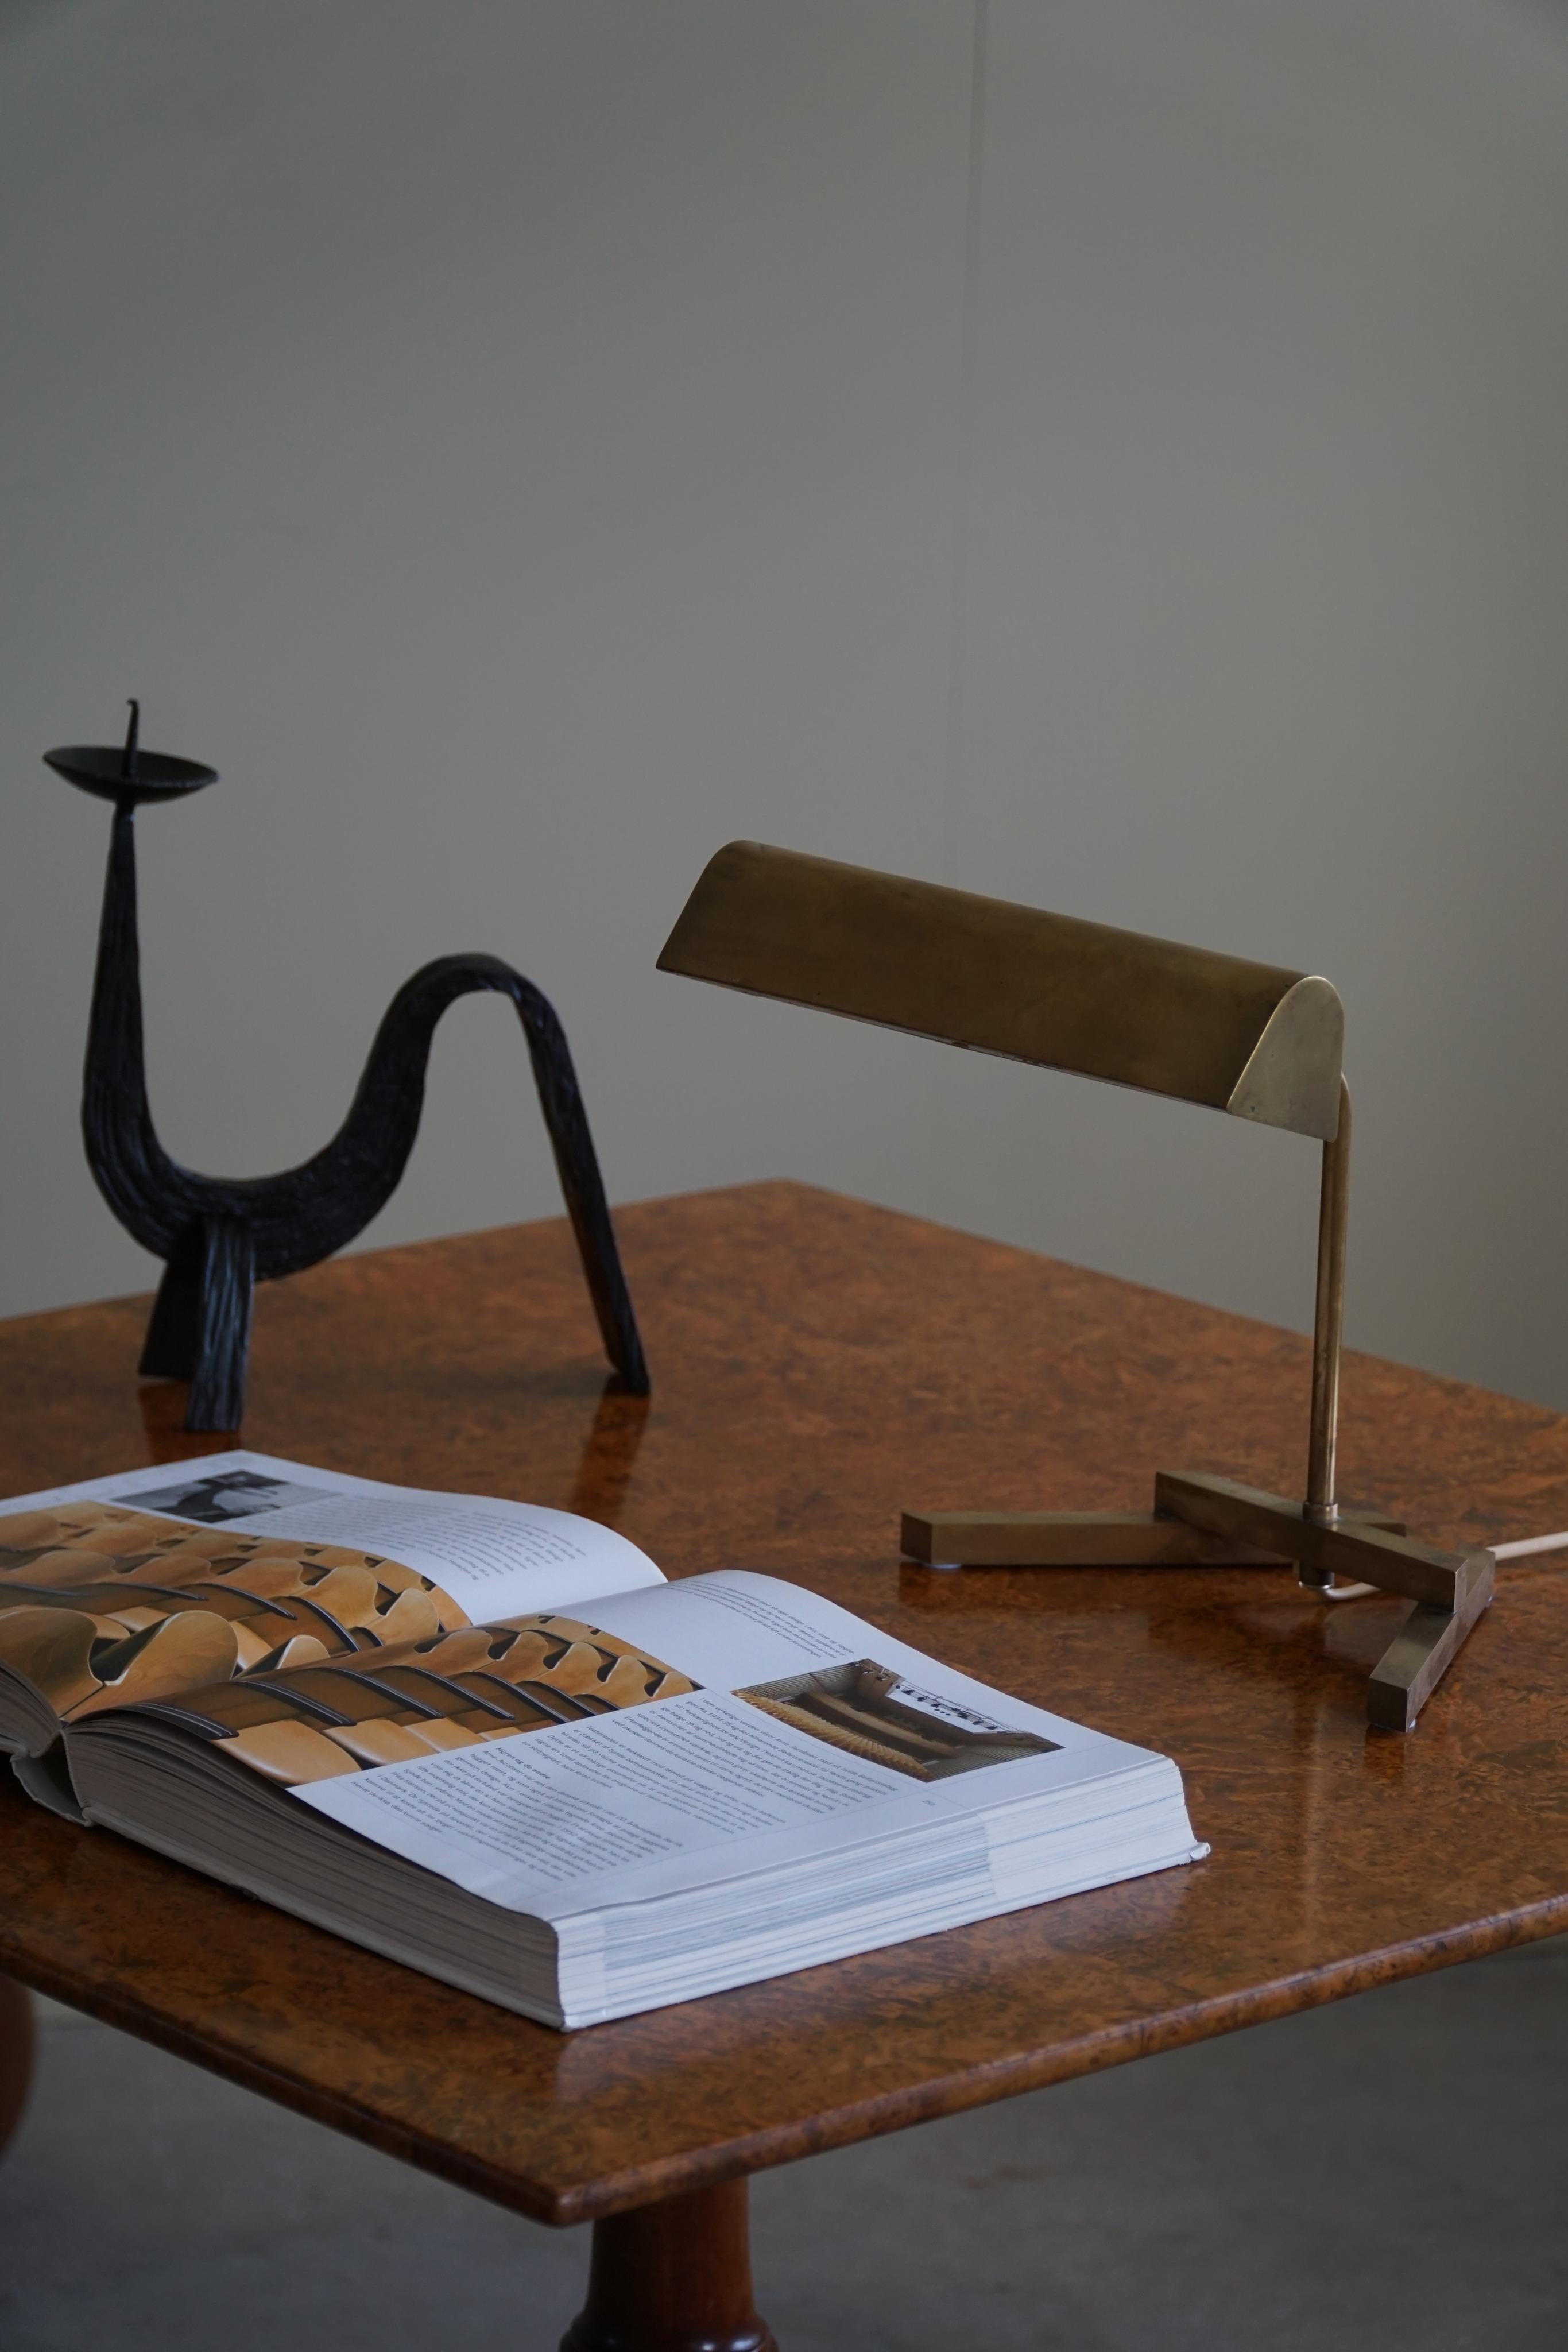 Rehaussez votre décoration intérieure avec cette superbe lampe de table moderne danoise des années 1950. Fabriqué avec le souci du détail, ce chef-d'œuvre géométrique en laiton incarne l'élégance et l'innovation du design danois du milieu du siècle